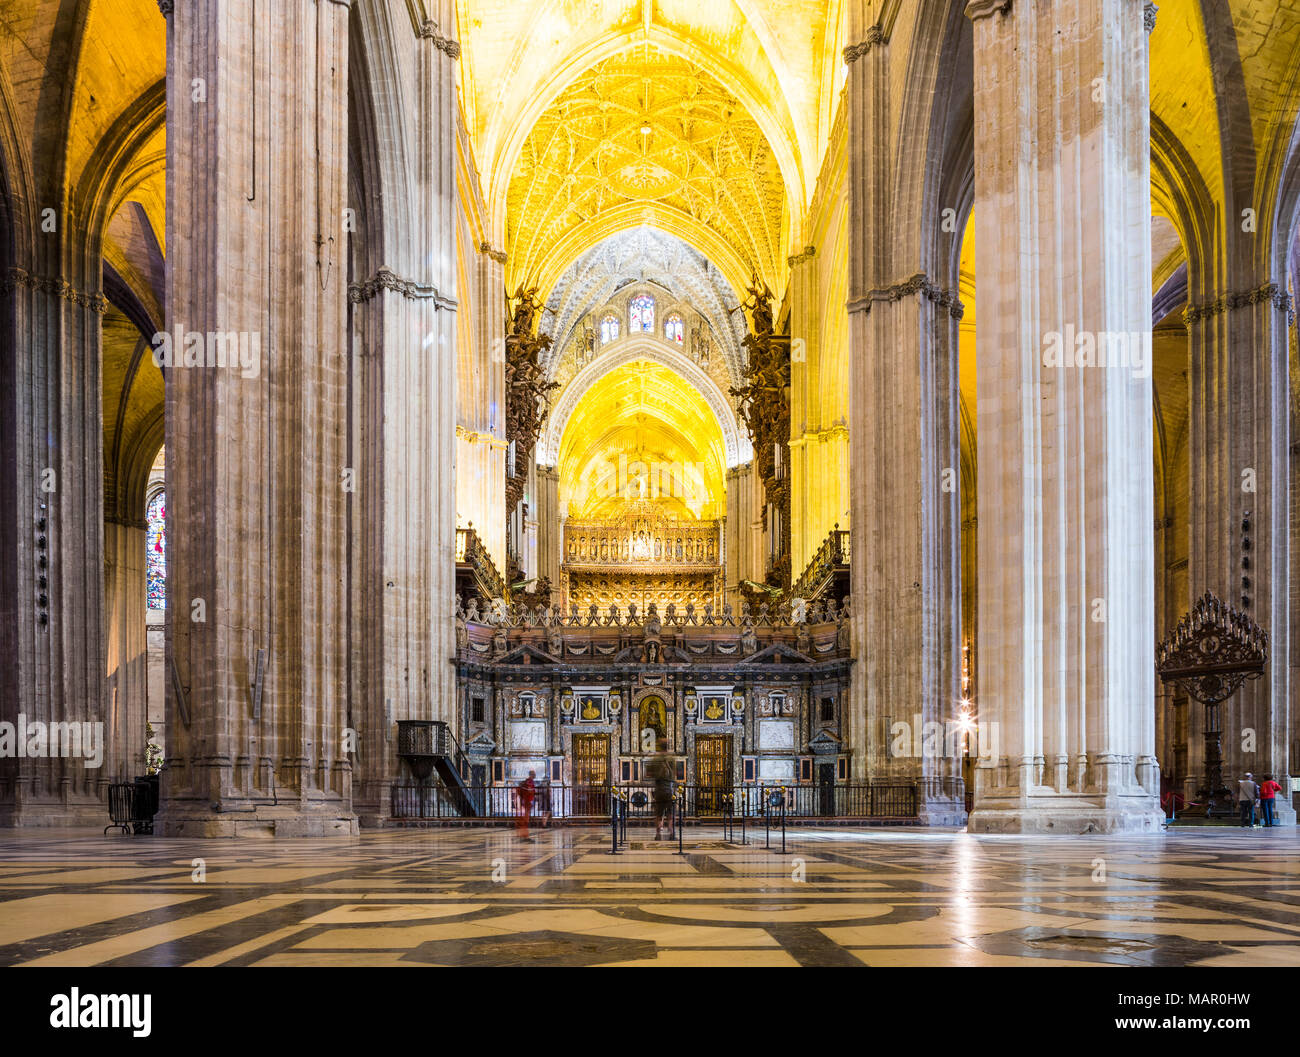 El interior de la Catedral de Sevilla (Catedral de Sevilla), Sitio de Patrimonio Mundial de la UNESCO, Andalucia, España, Europa Foto de stock